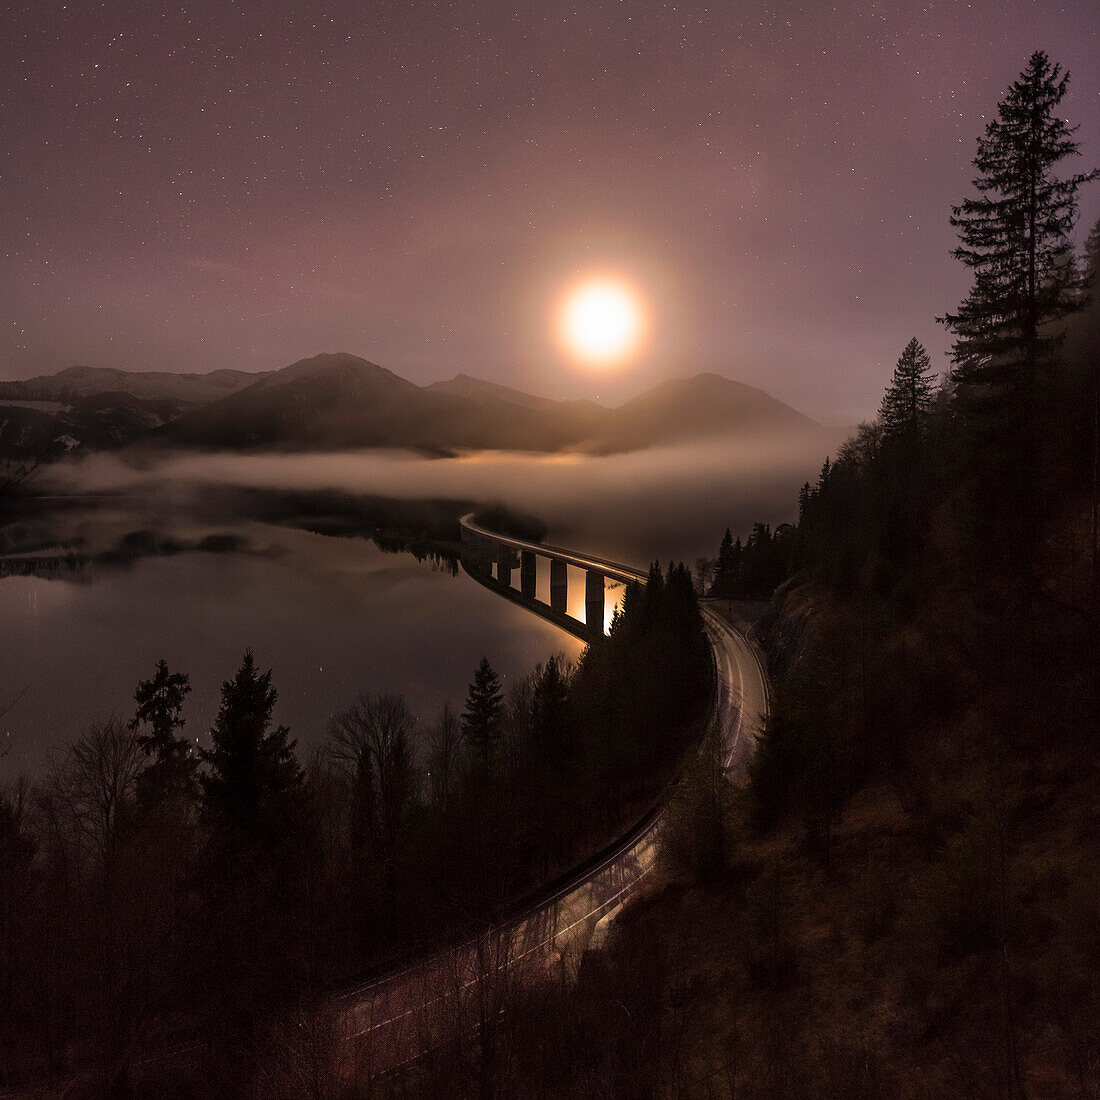 Nebel zieht auf an der Faller-Klamm-Brücke über den Sylvensteinspeicher bei Nacht, Lenggries, Bayern, Deutschland